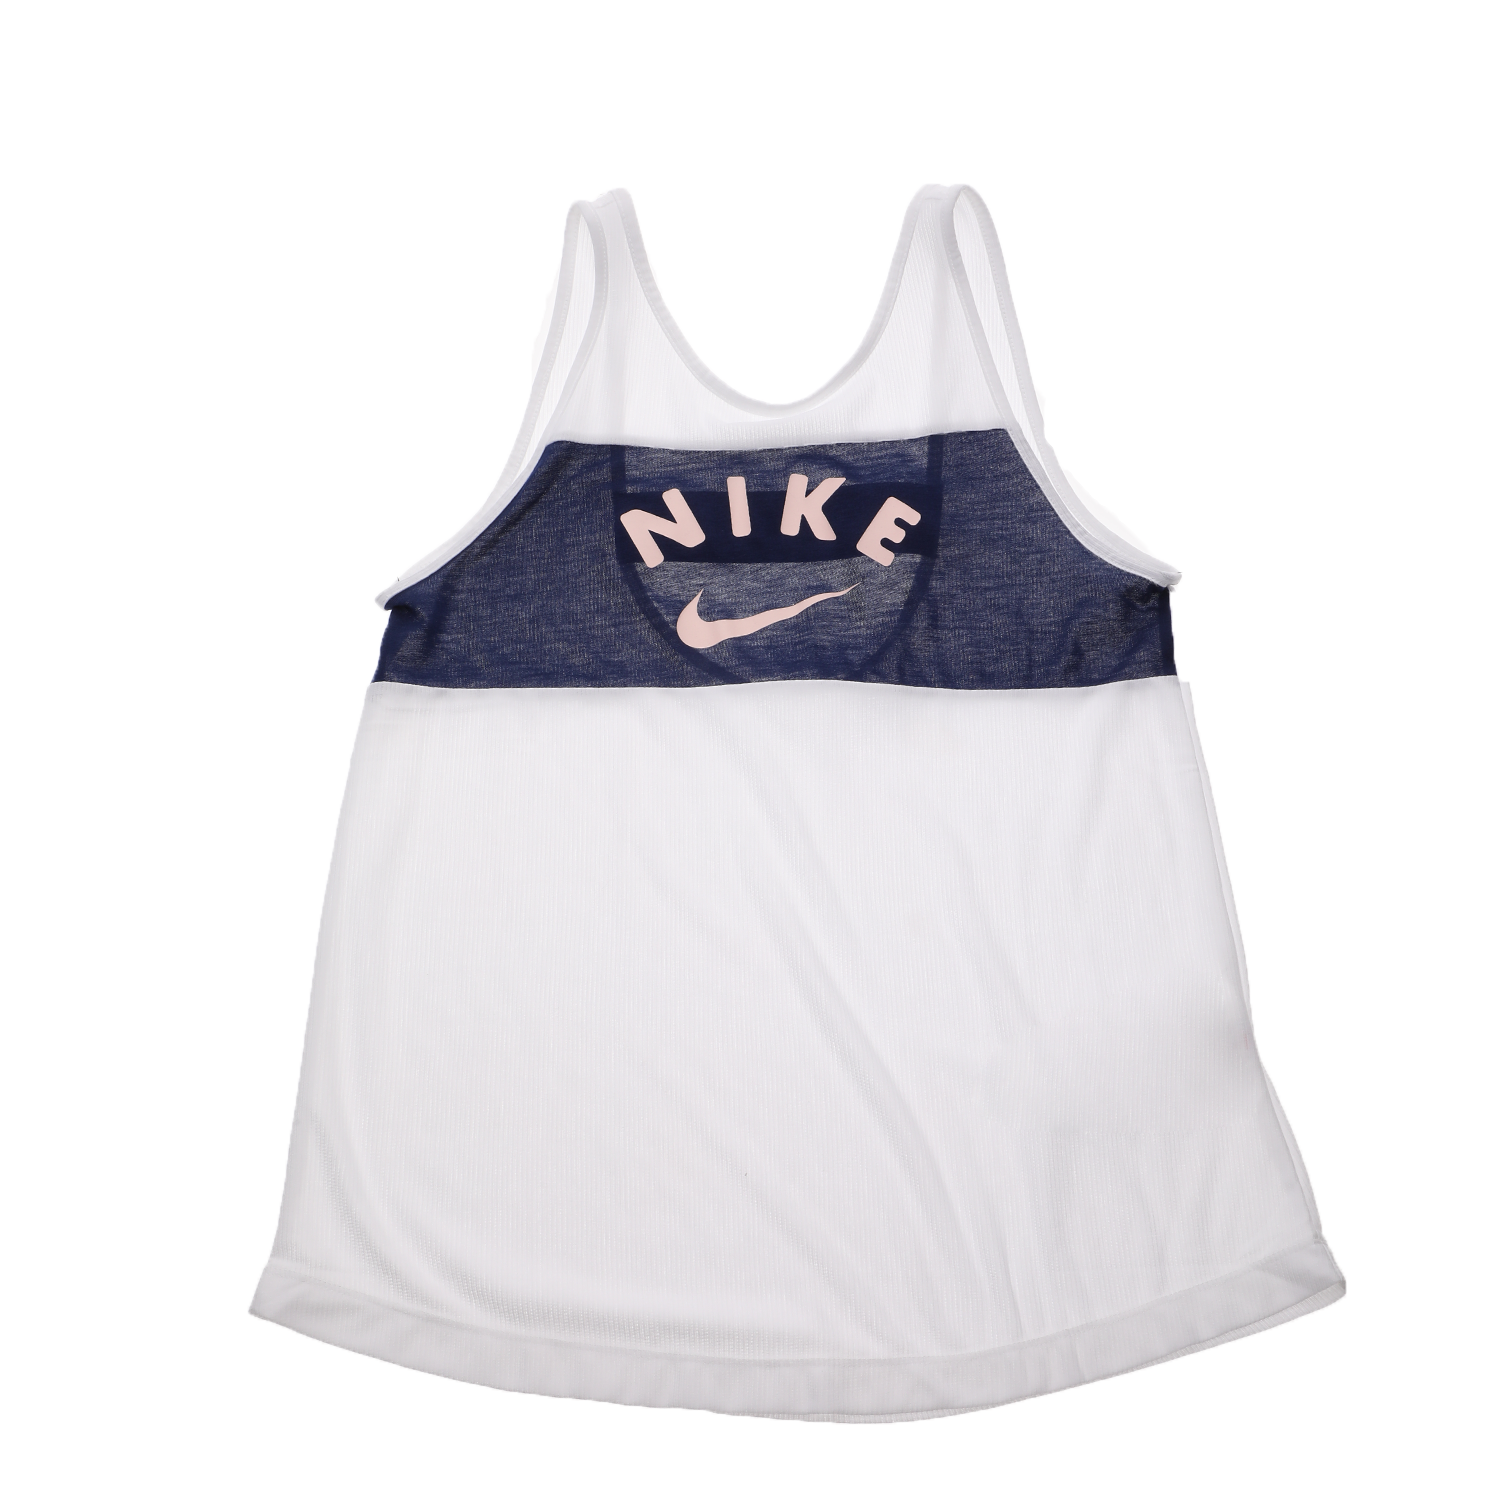 Παιδικά/Girls/Ρούχα/Αθλητικά NIKE - Παιδική αμάνικη μπλούζα NIKE TANK FB λευκή